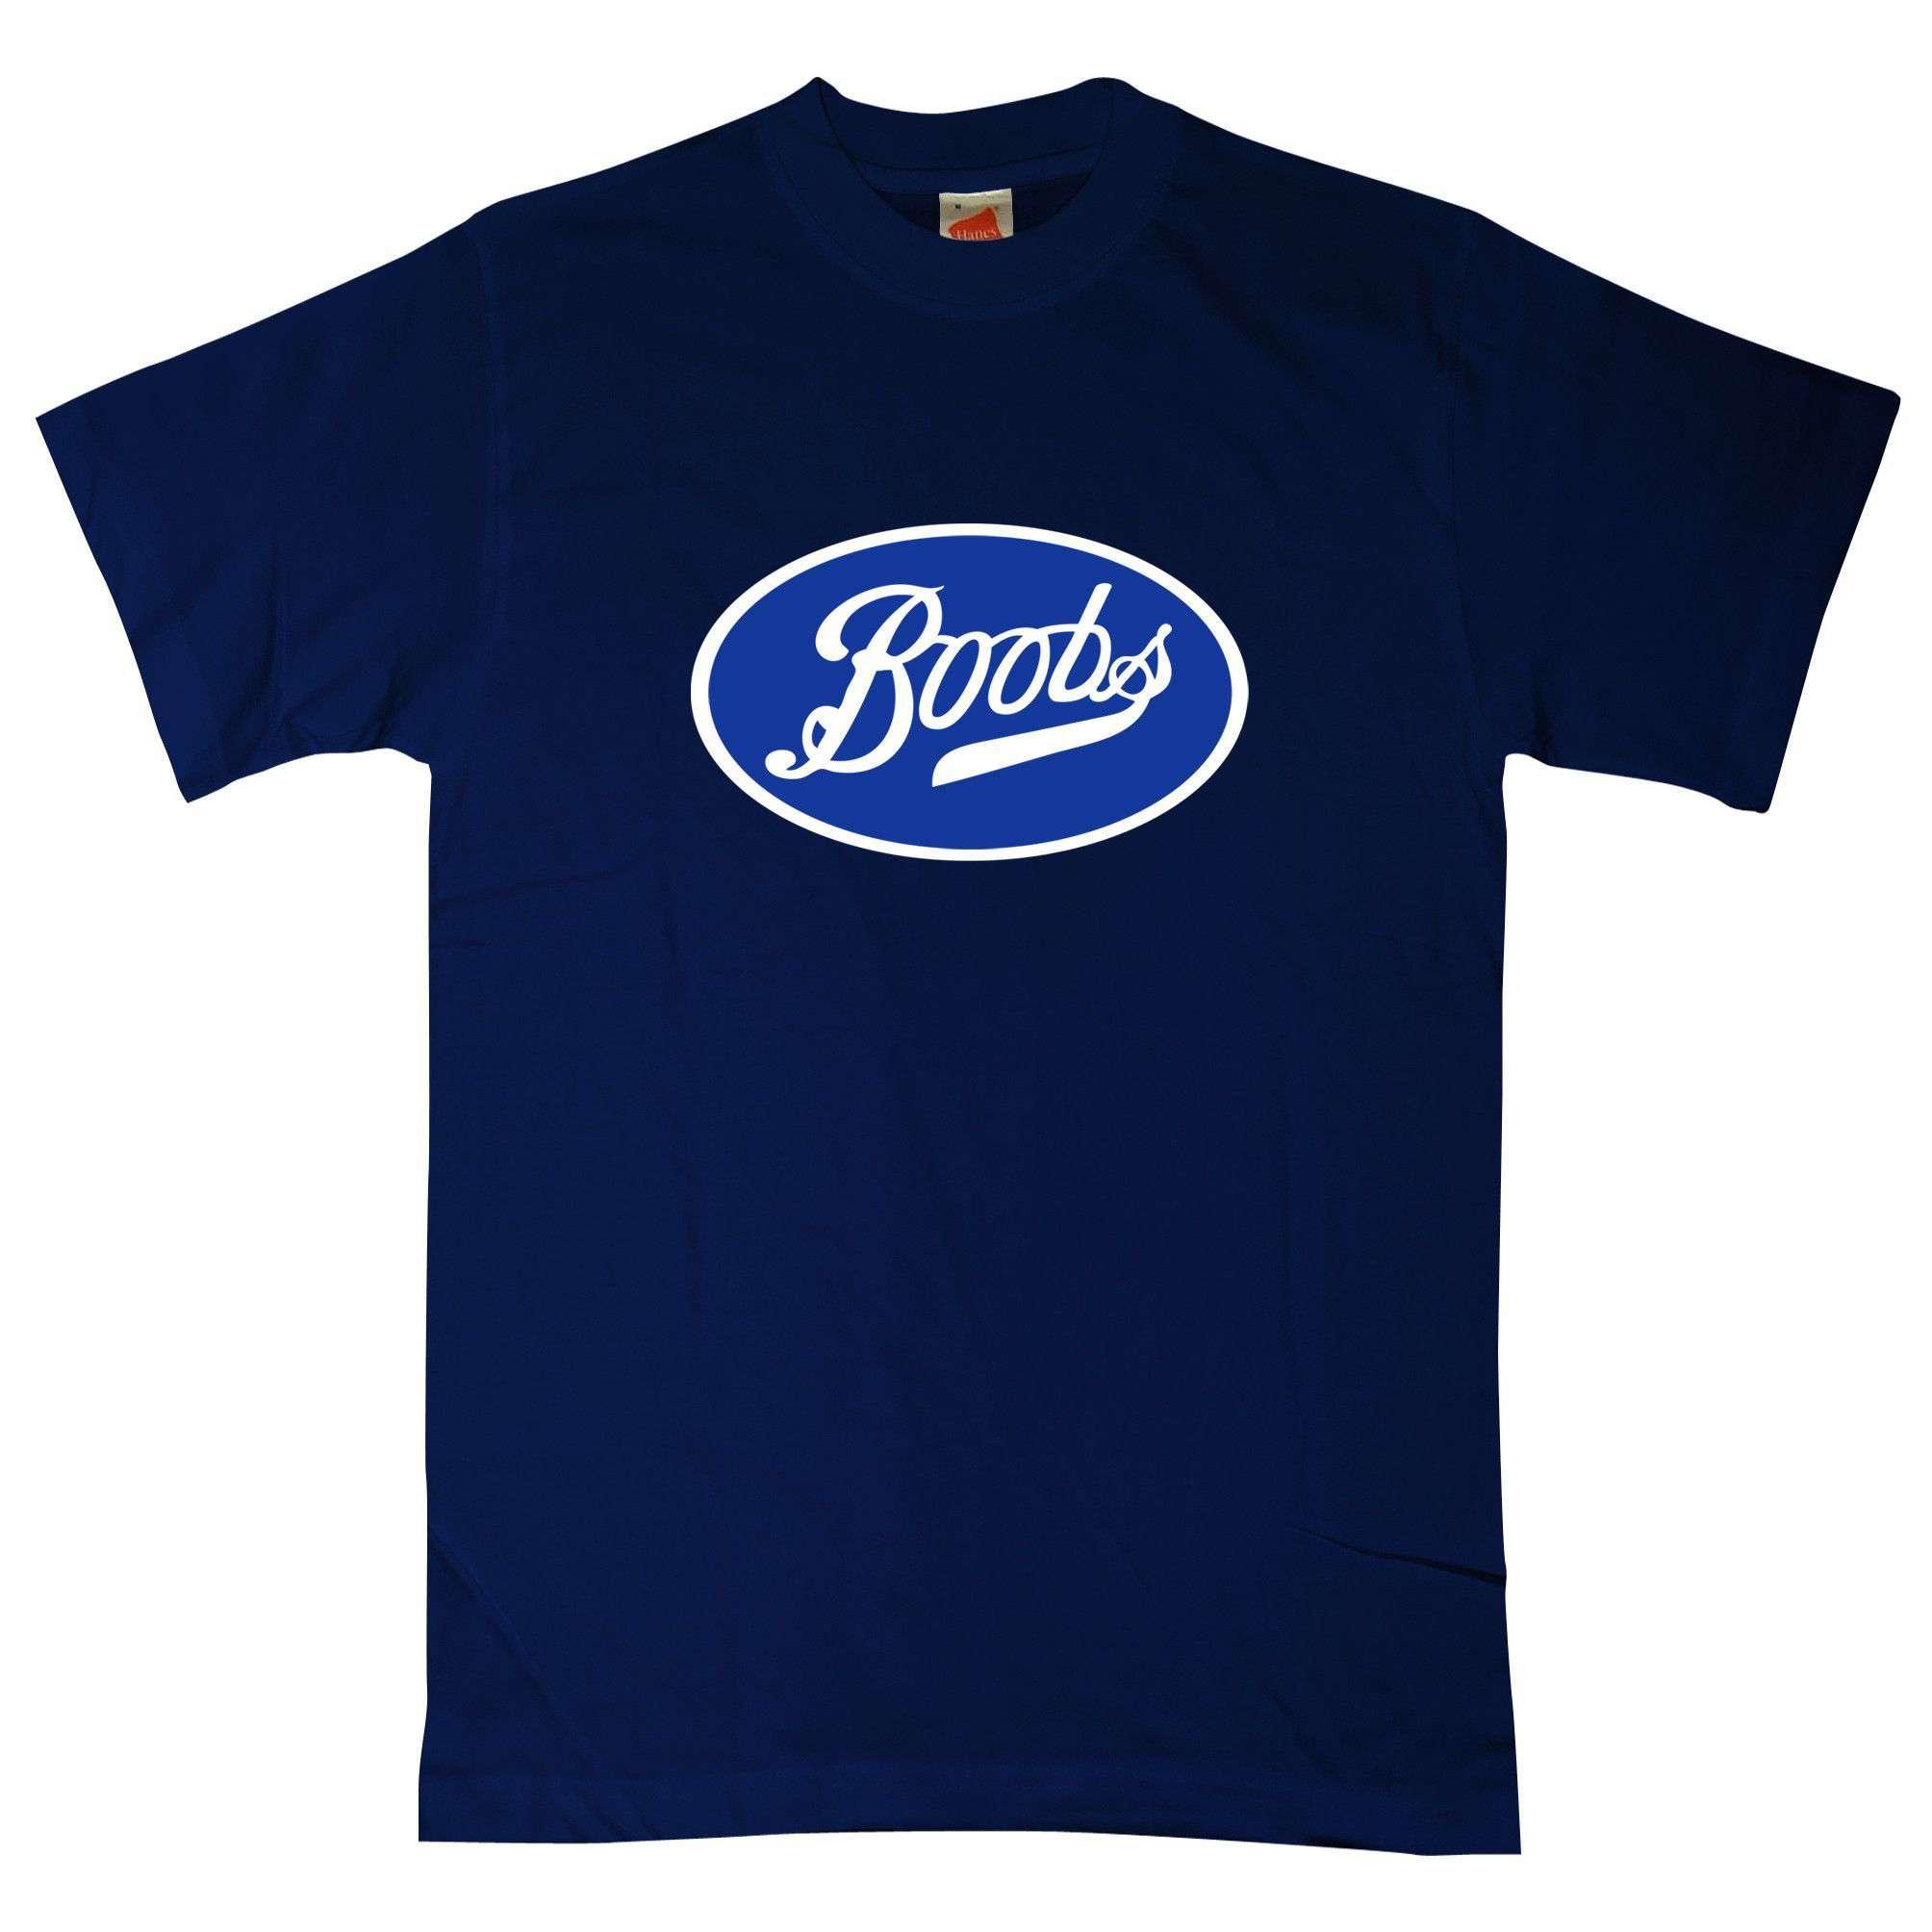 Boobs Mens T-Shirt, 8Ball Originals